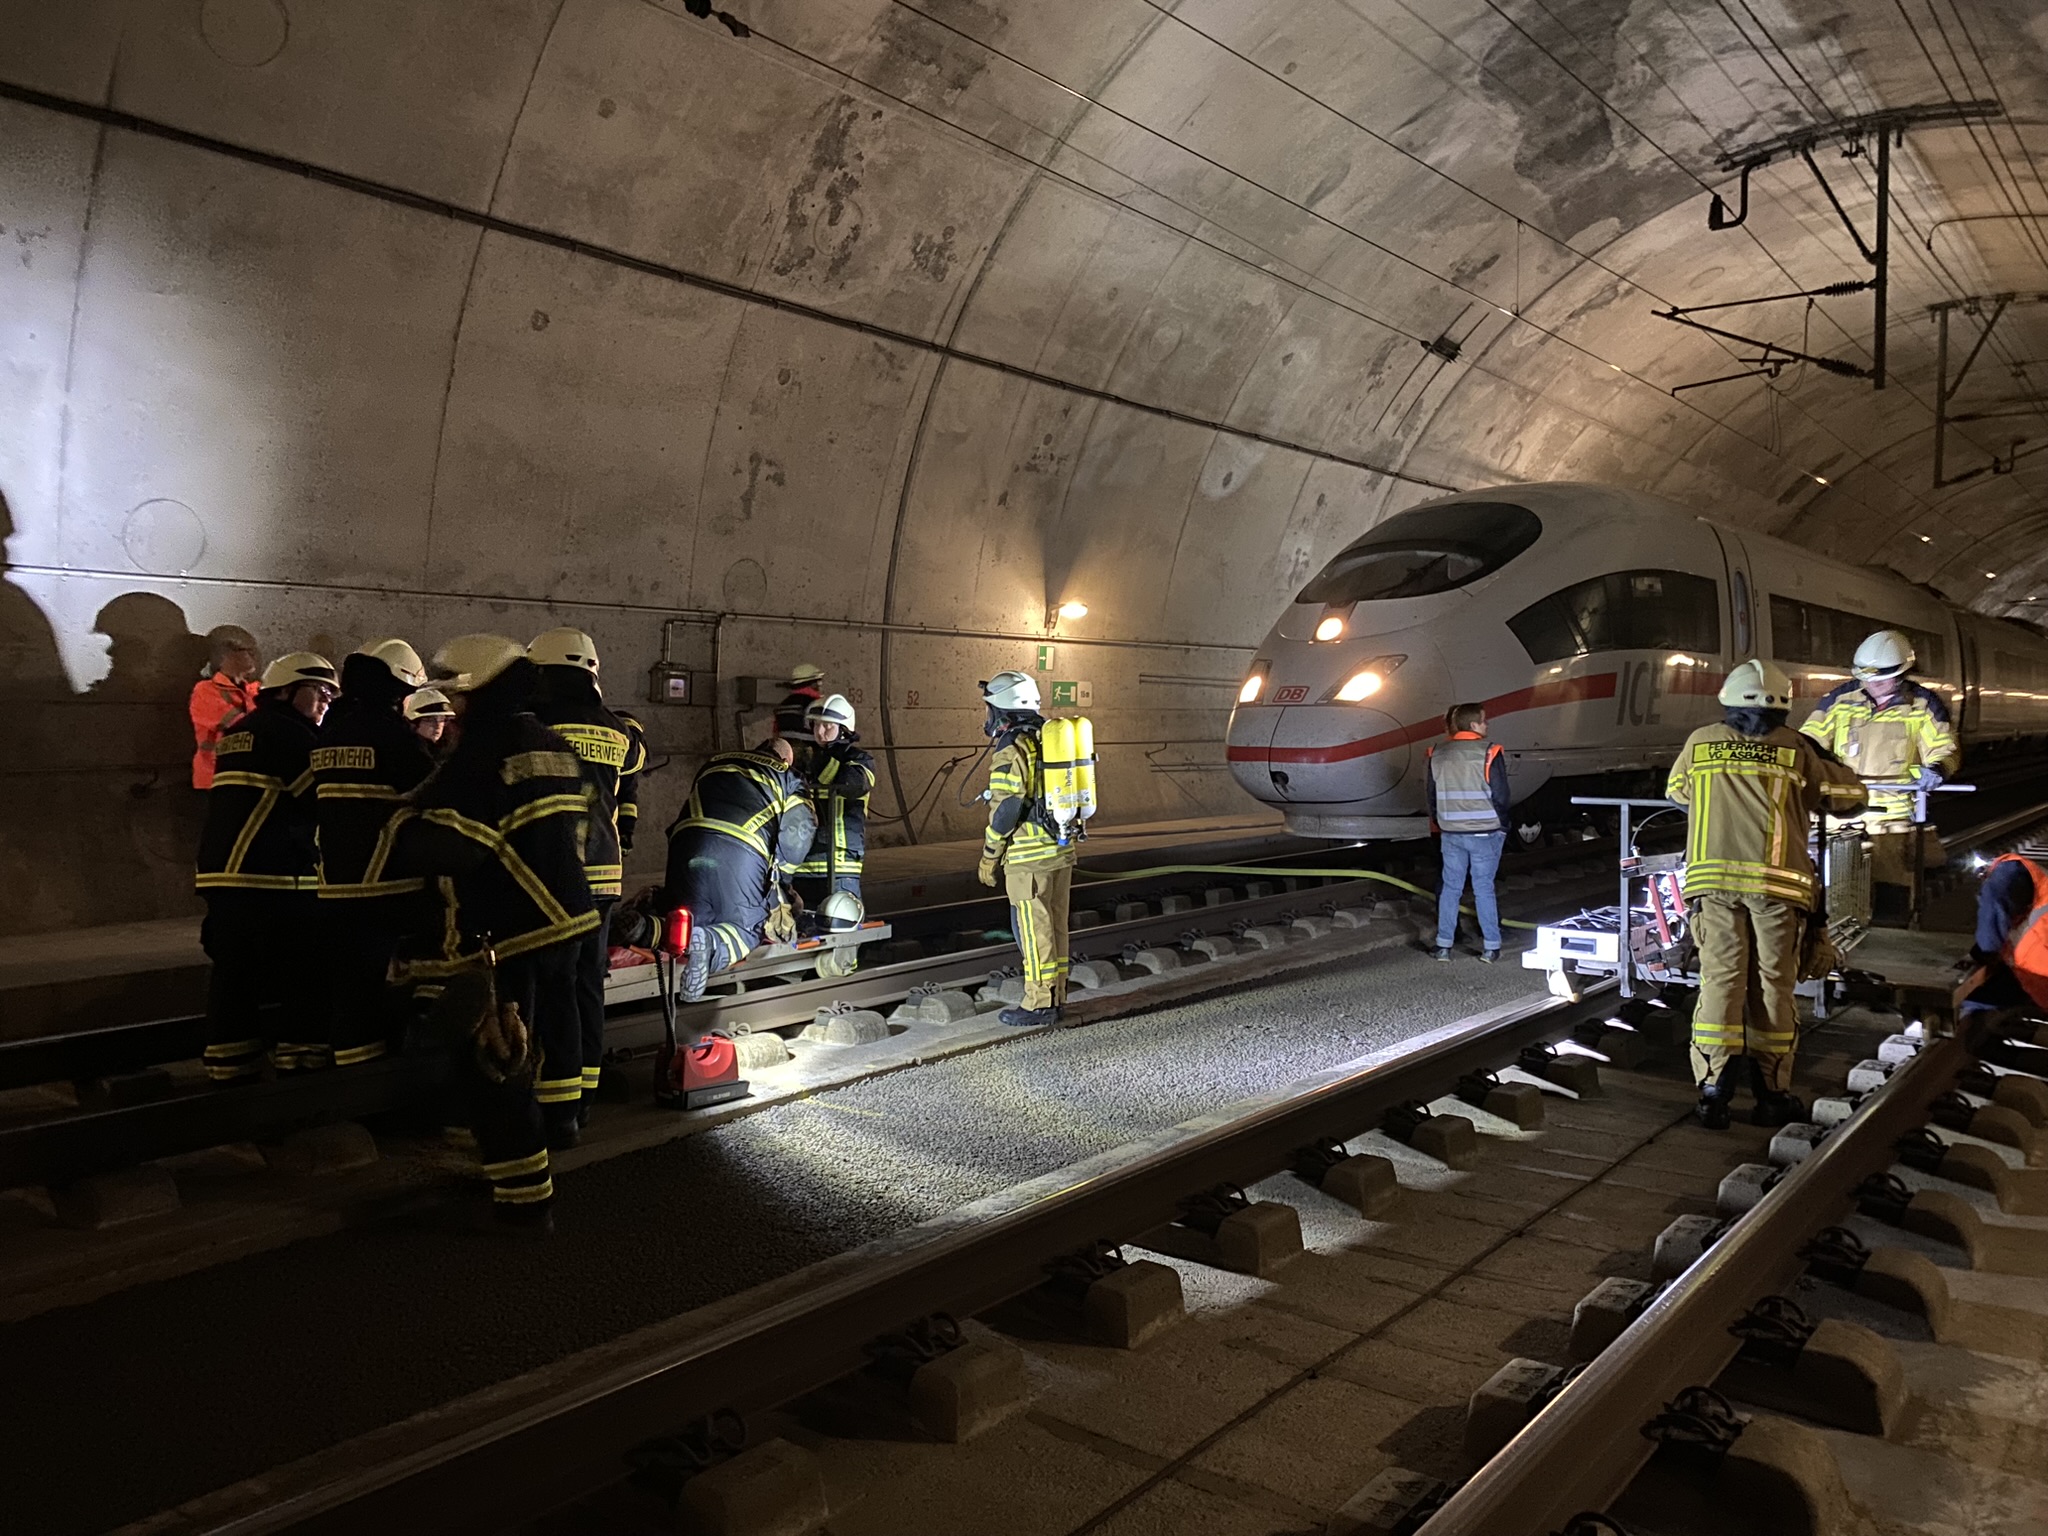 Üung im ICE-Tunnel Günterscheid, ICE-Tunnel Günterscheid, ICE-Tunnel, Feuerwehr, Feuerwehr Vettelschoß